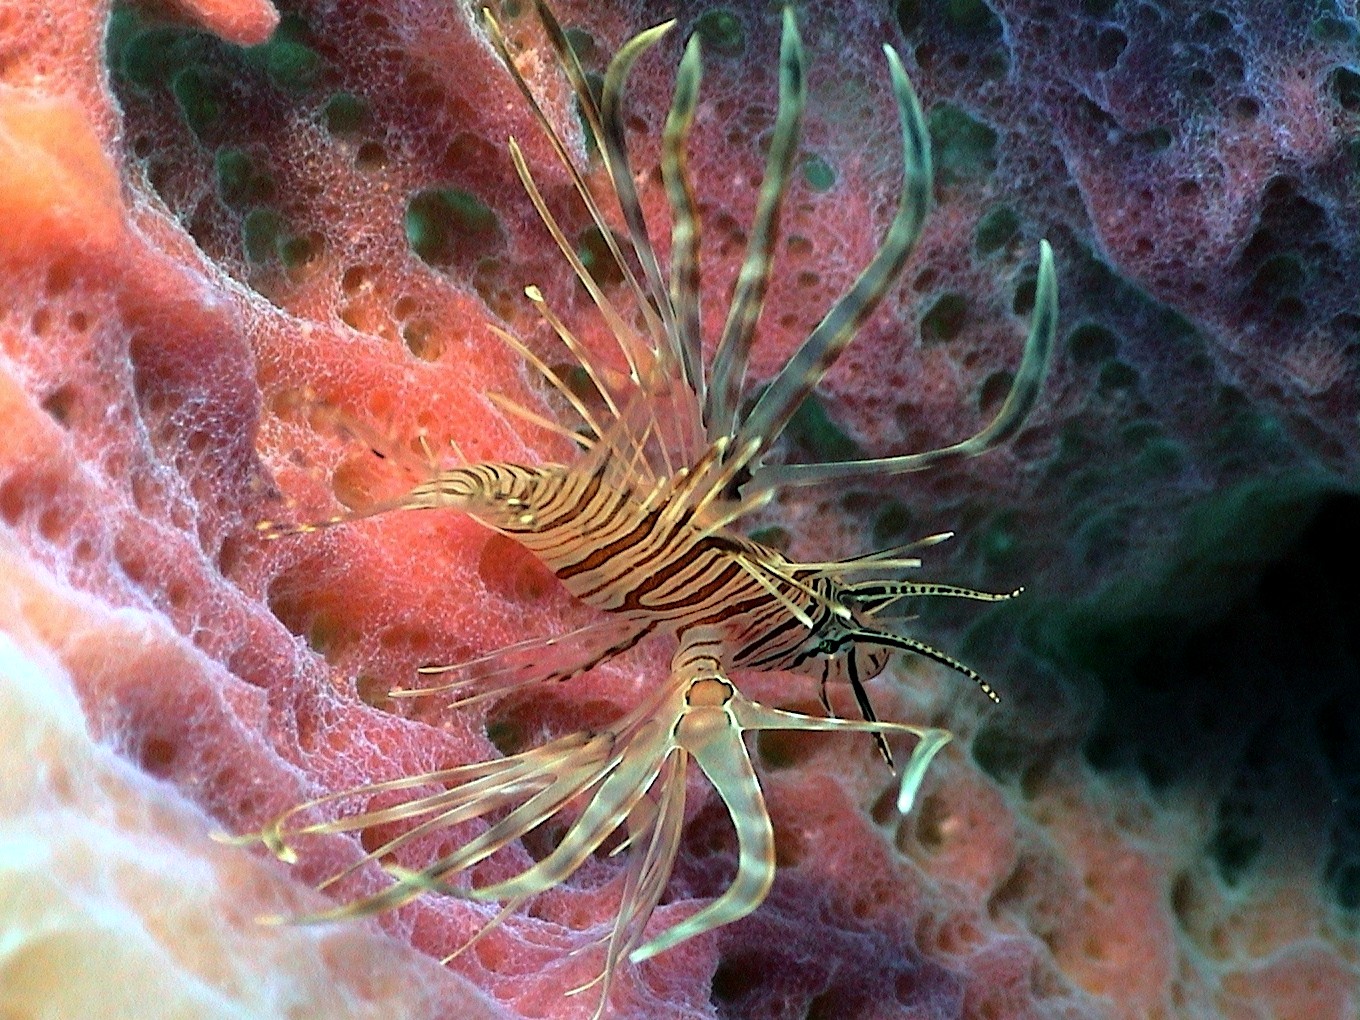 Juvenile Lionfish in a Sponge